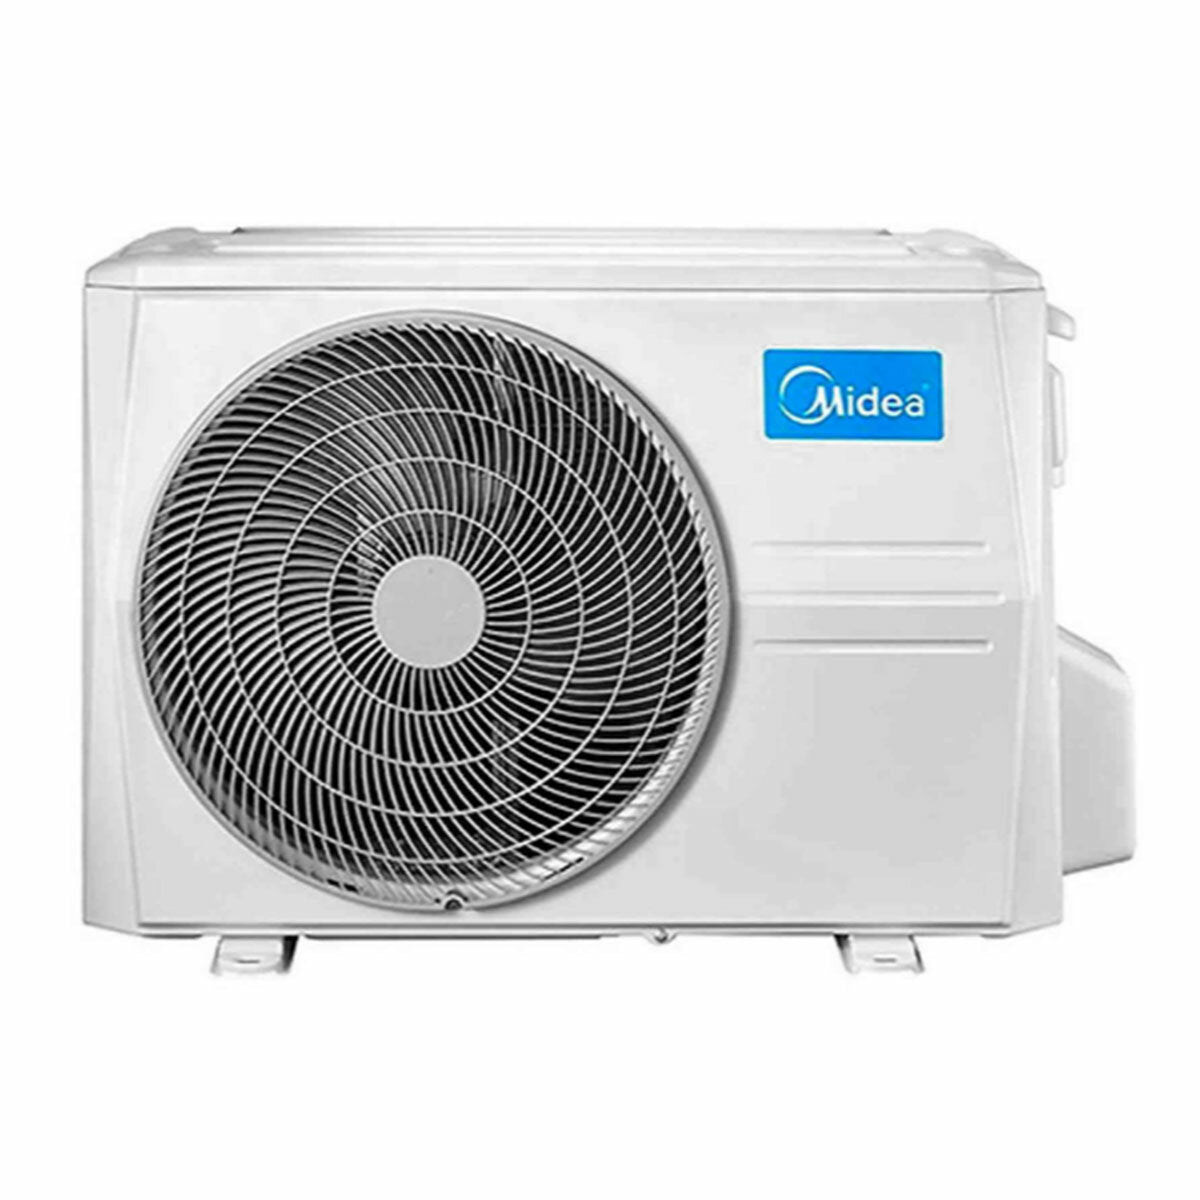 Midea Evolution dual split air conditioner 12000+18000 BTU inverter A+ external unit 7.9 kW